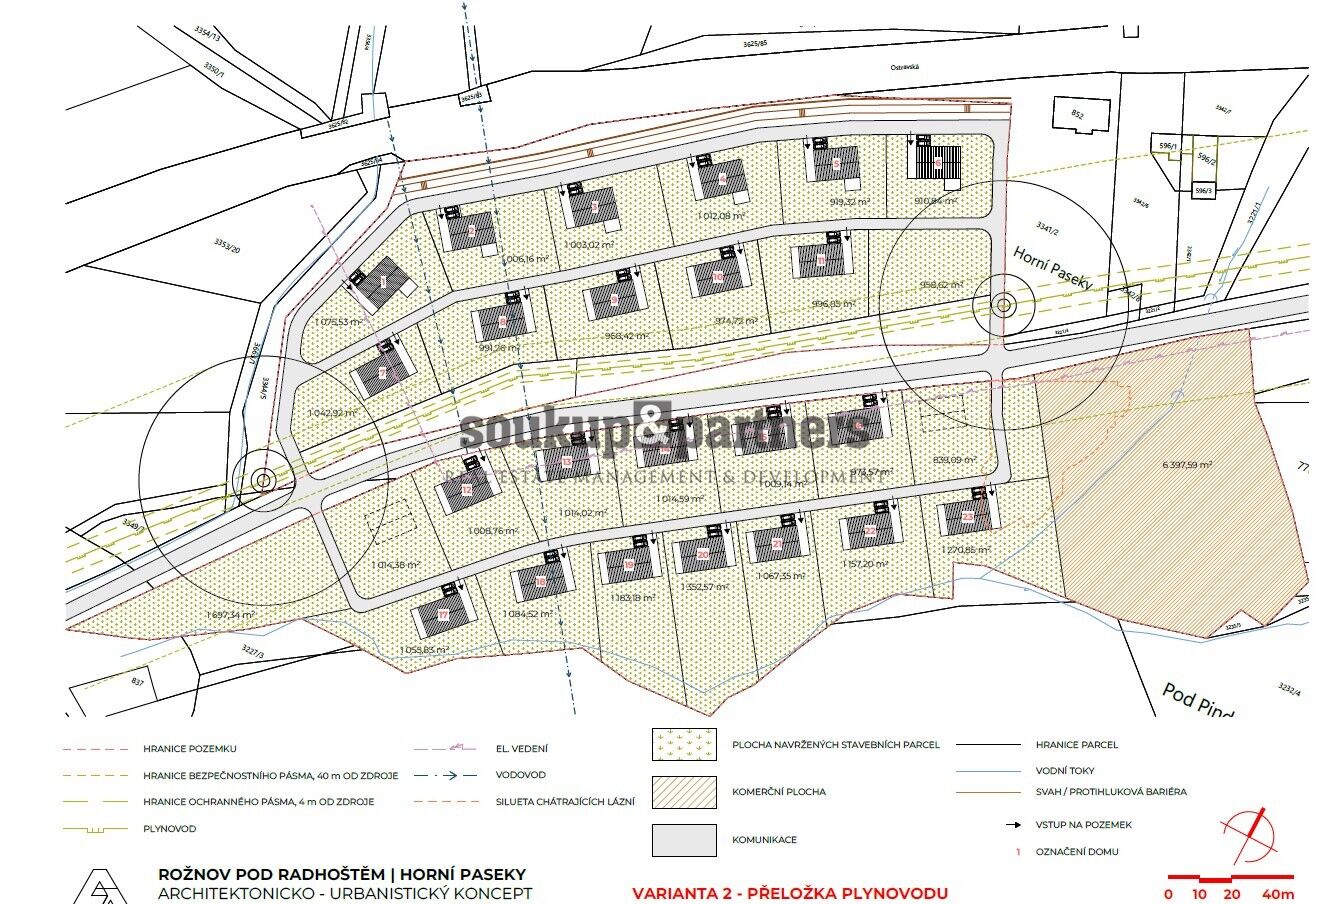 Stavební pozemky - 54.052 m2, parcelace na 24 Rodinných domů, Beskydy, Rožnov pod Radhoštěm.